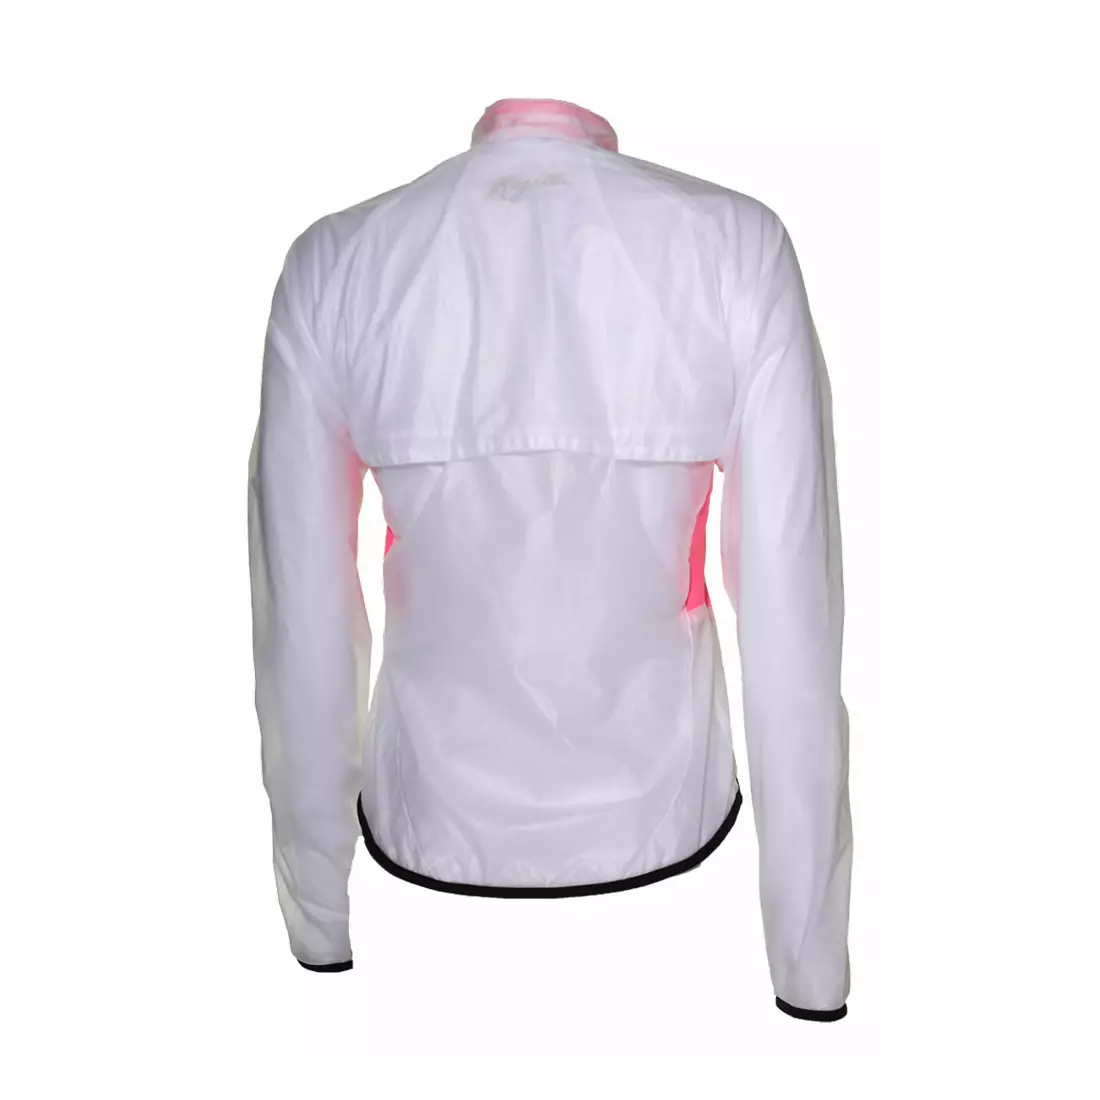 ROGELLI CANELLI női kerékpáros kabát, esőálló, színes: transparent-pink 